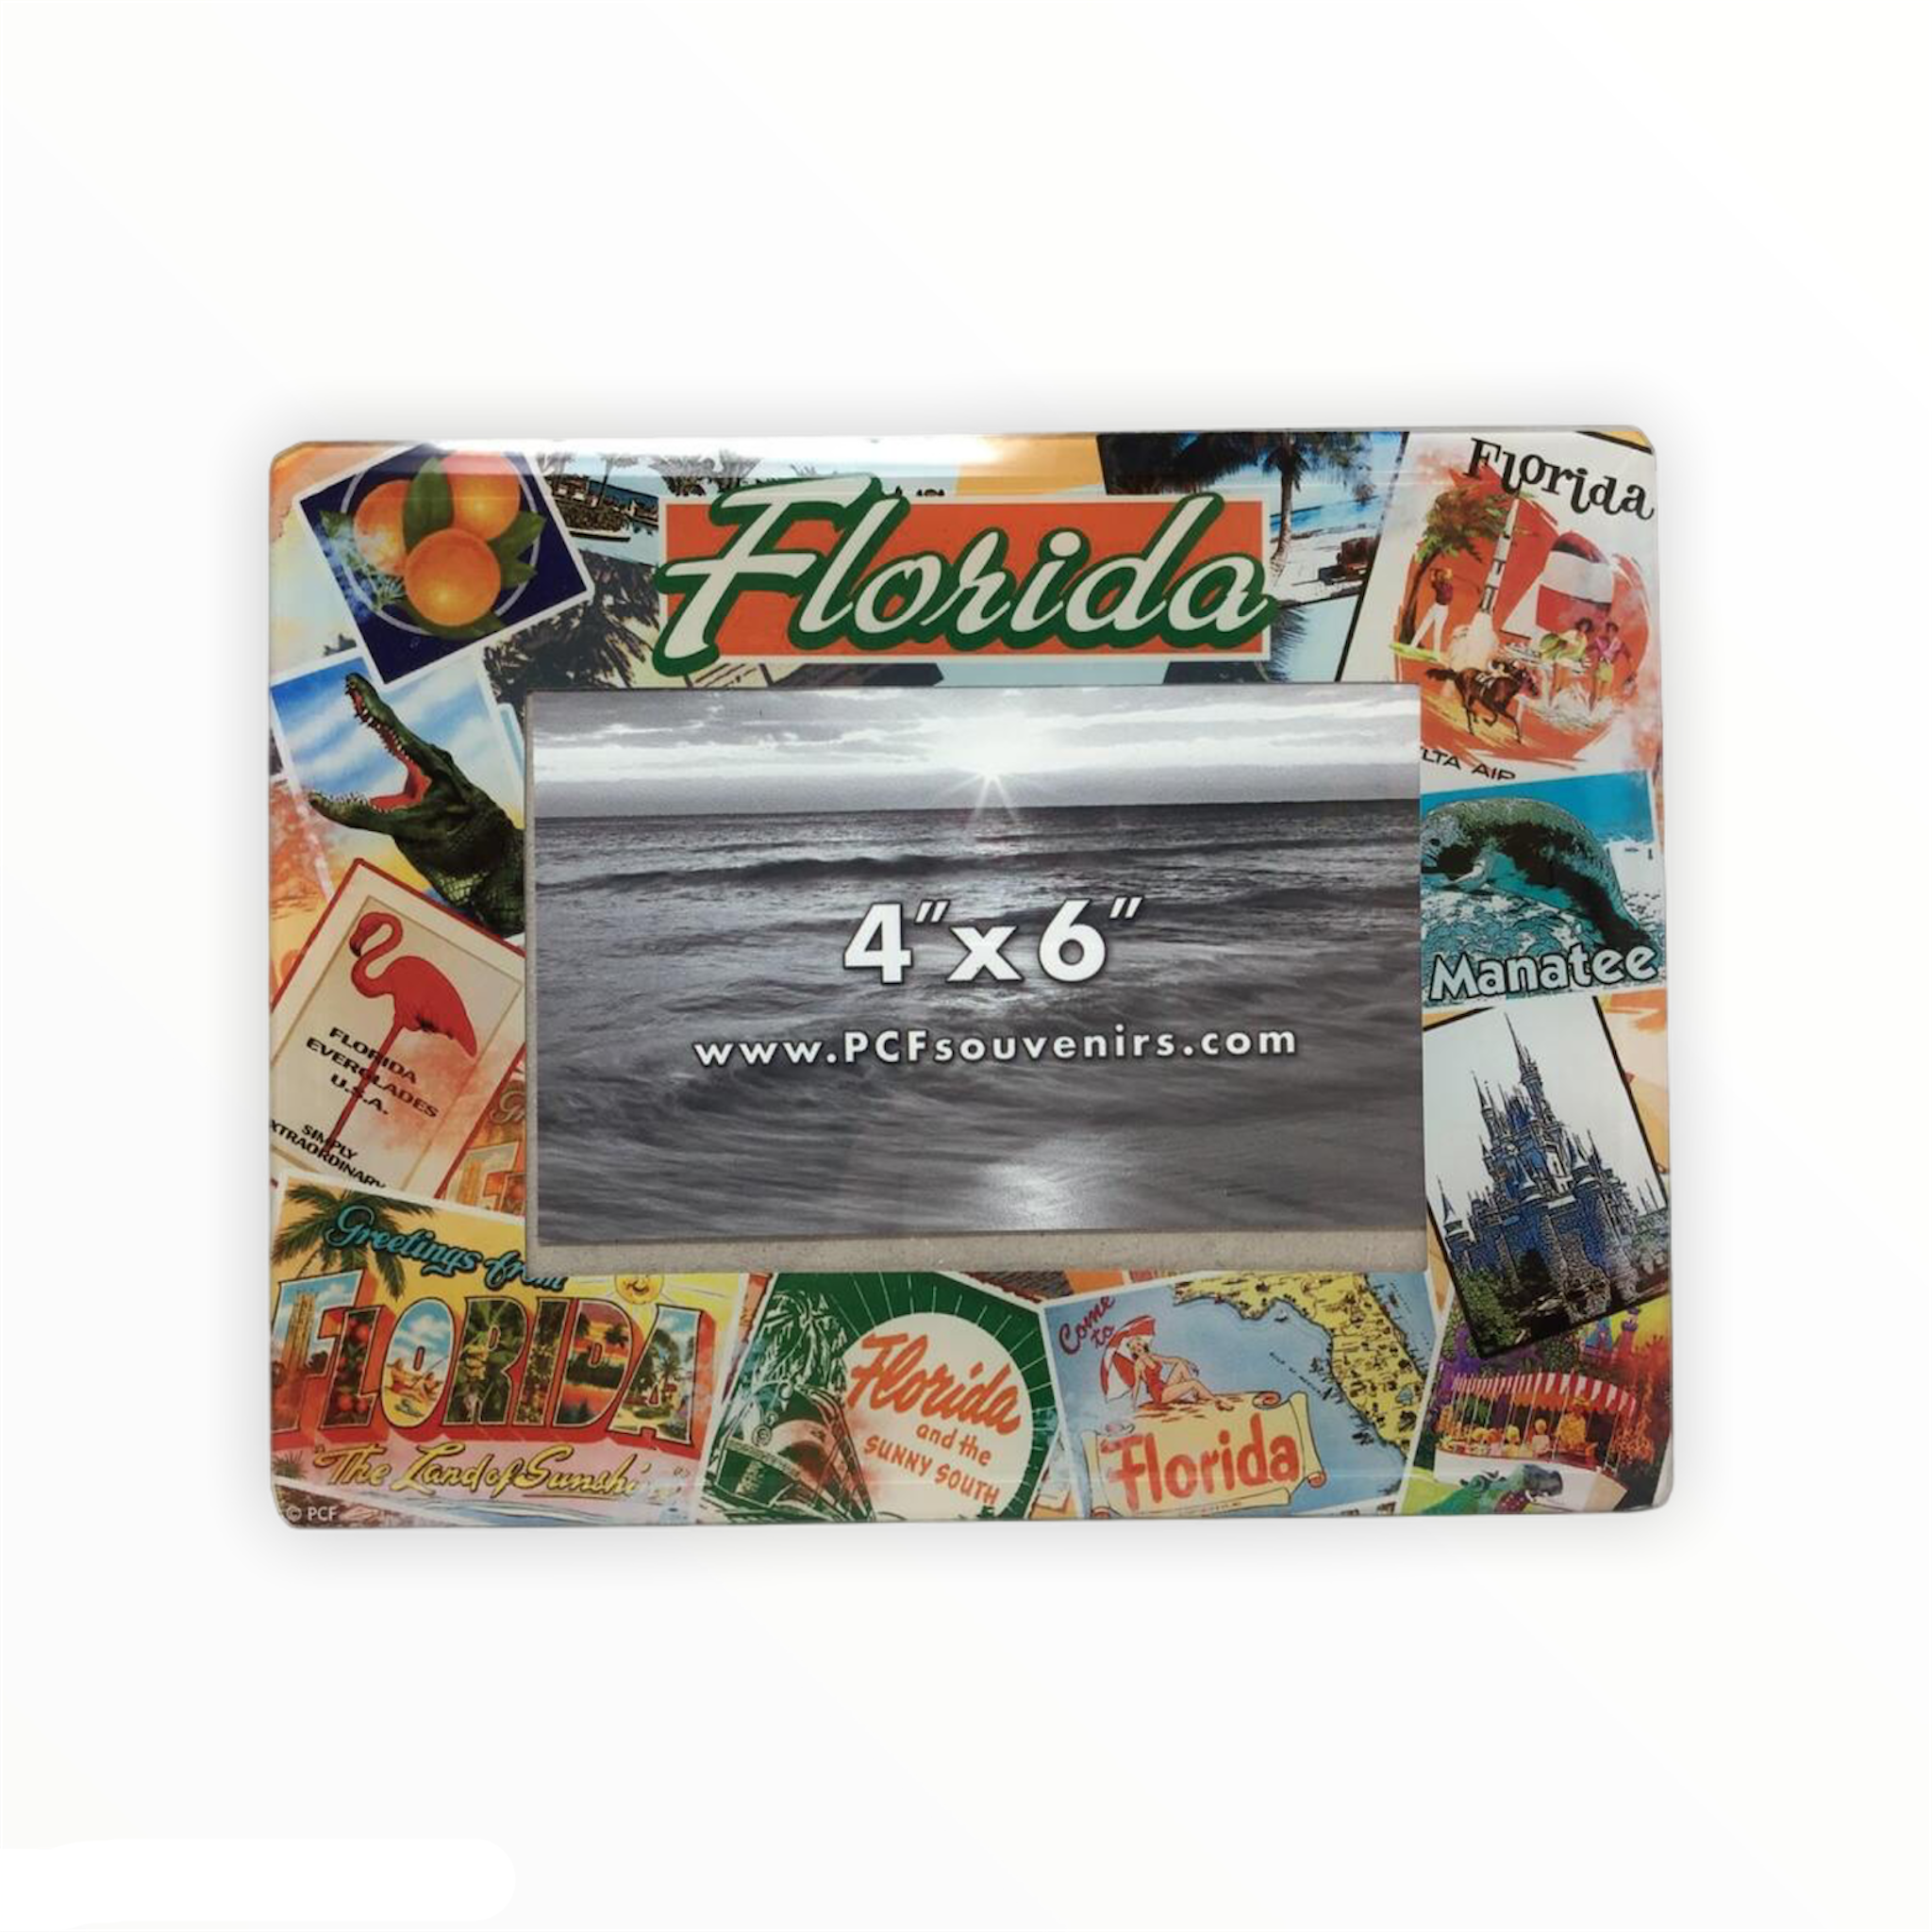 Florida Retro Glass Photo Frame 4x6"